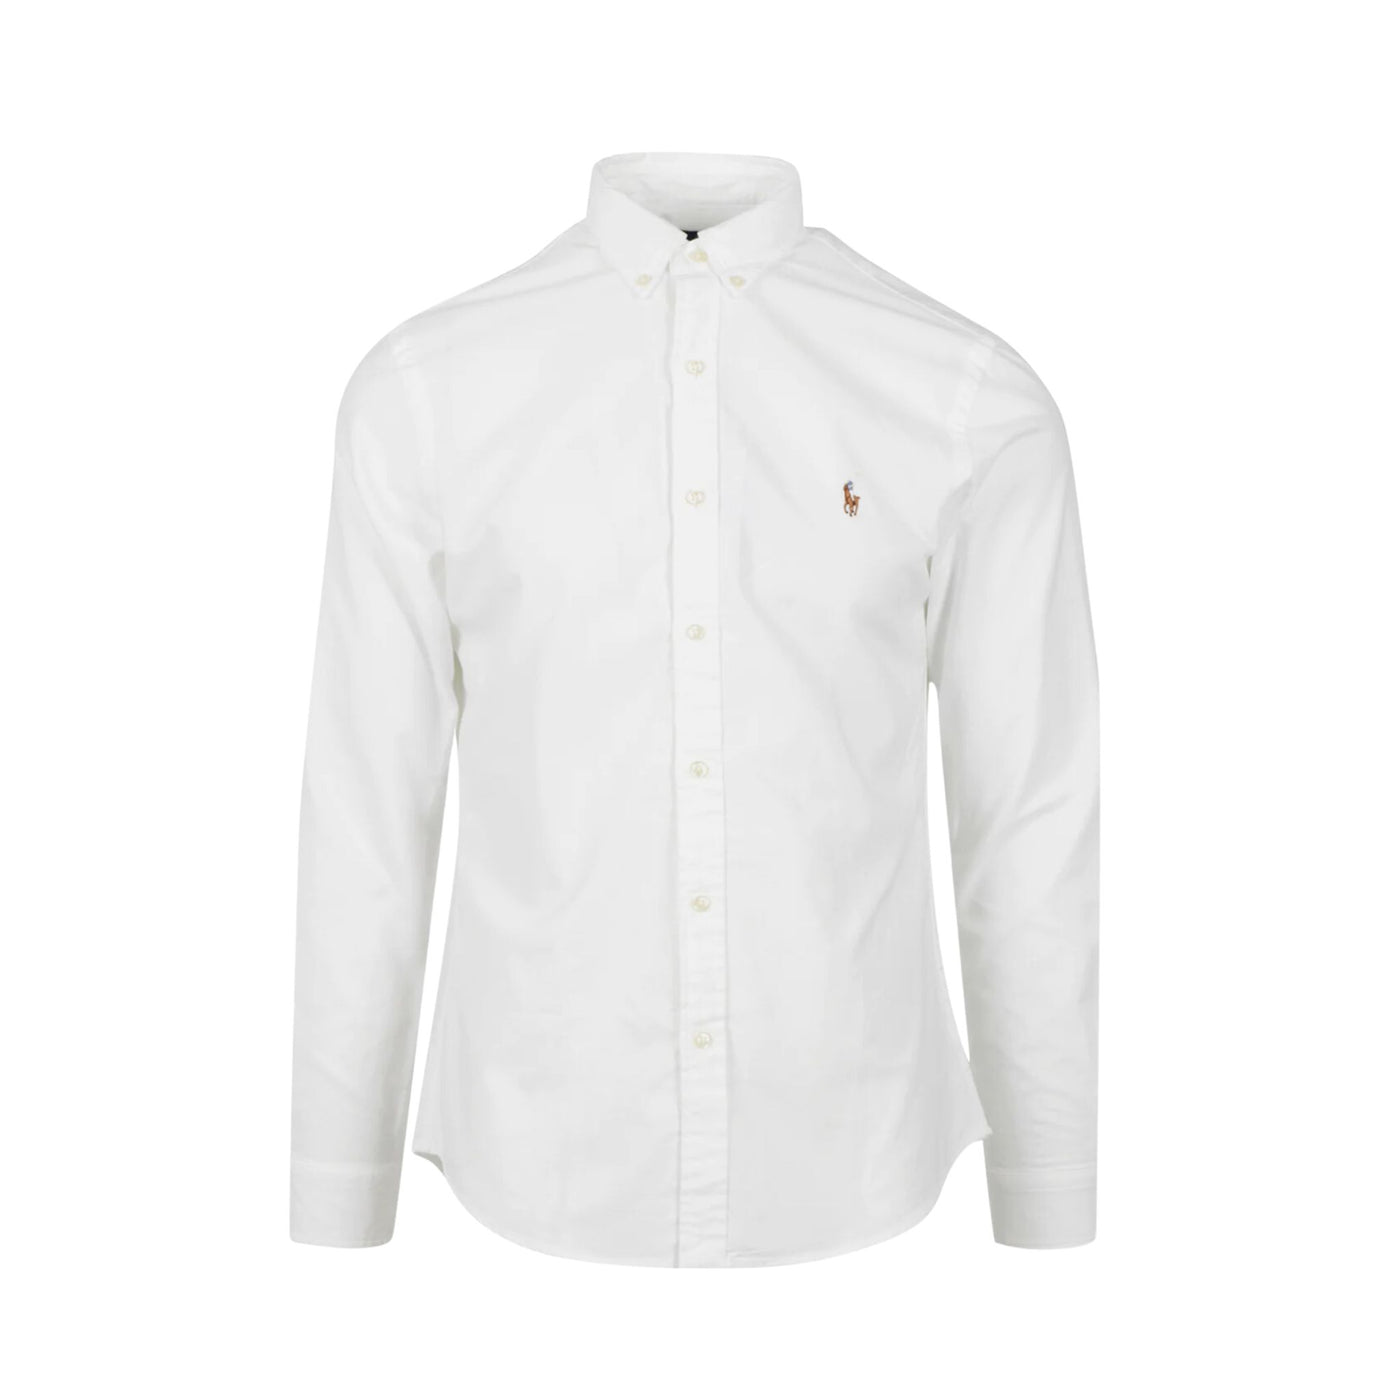 Immagine frontale della camicia bianca da uomo firmata Ralph Lauren,con colleto classico,manica lunga e chiusura con bottoni